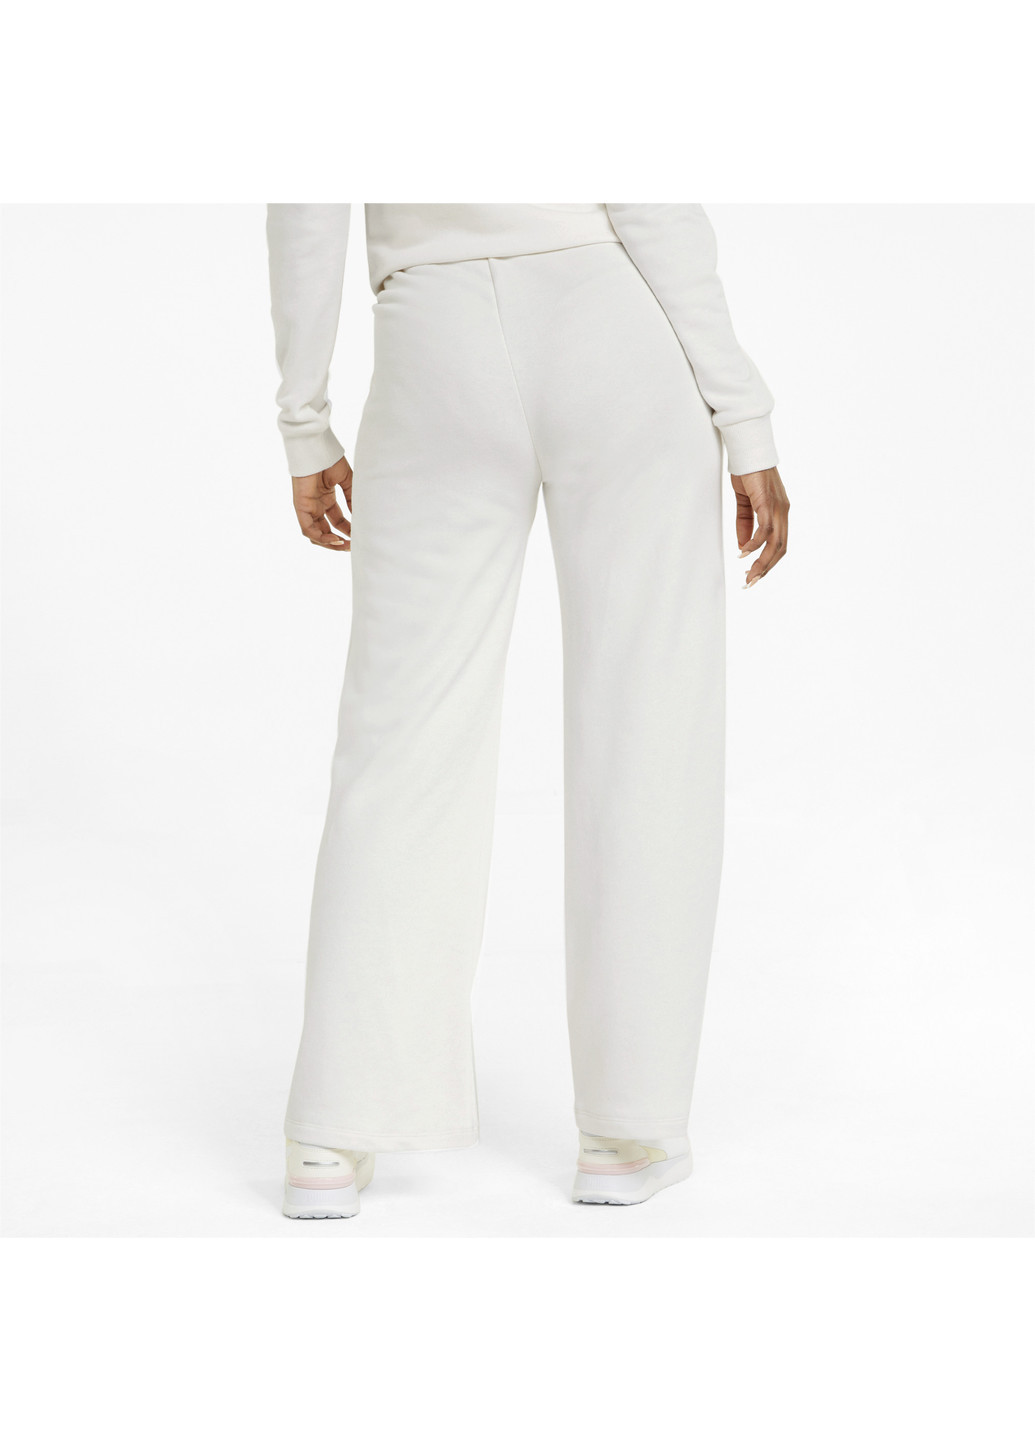 Штани Essentials+ Embroidery Women's Pants Puma однотонні комбіновані спортивні бавовна, поліестер, еластан